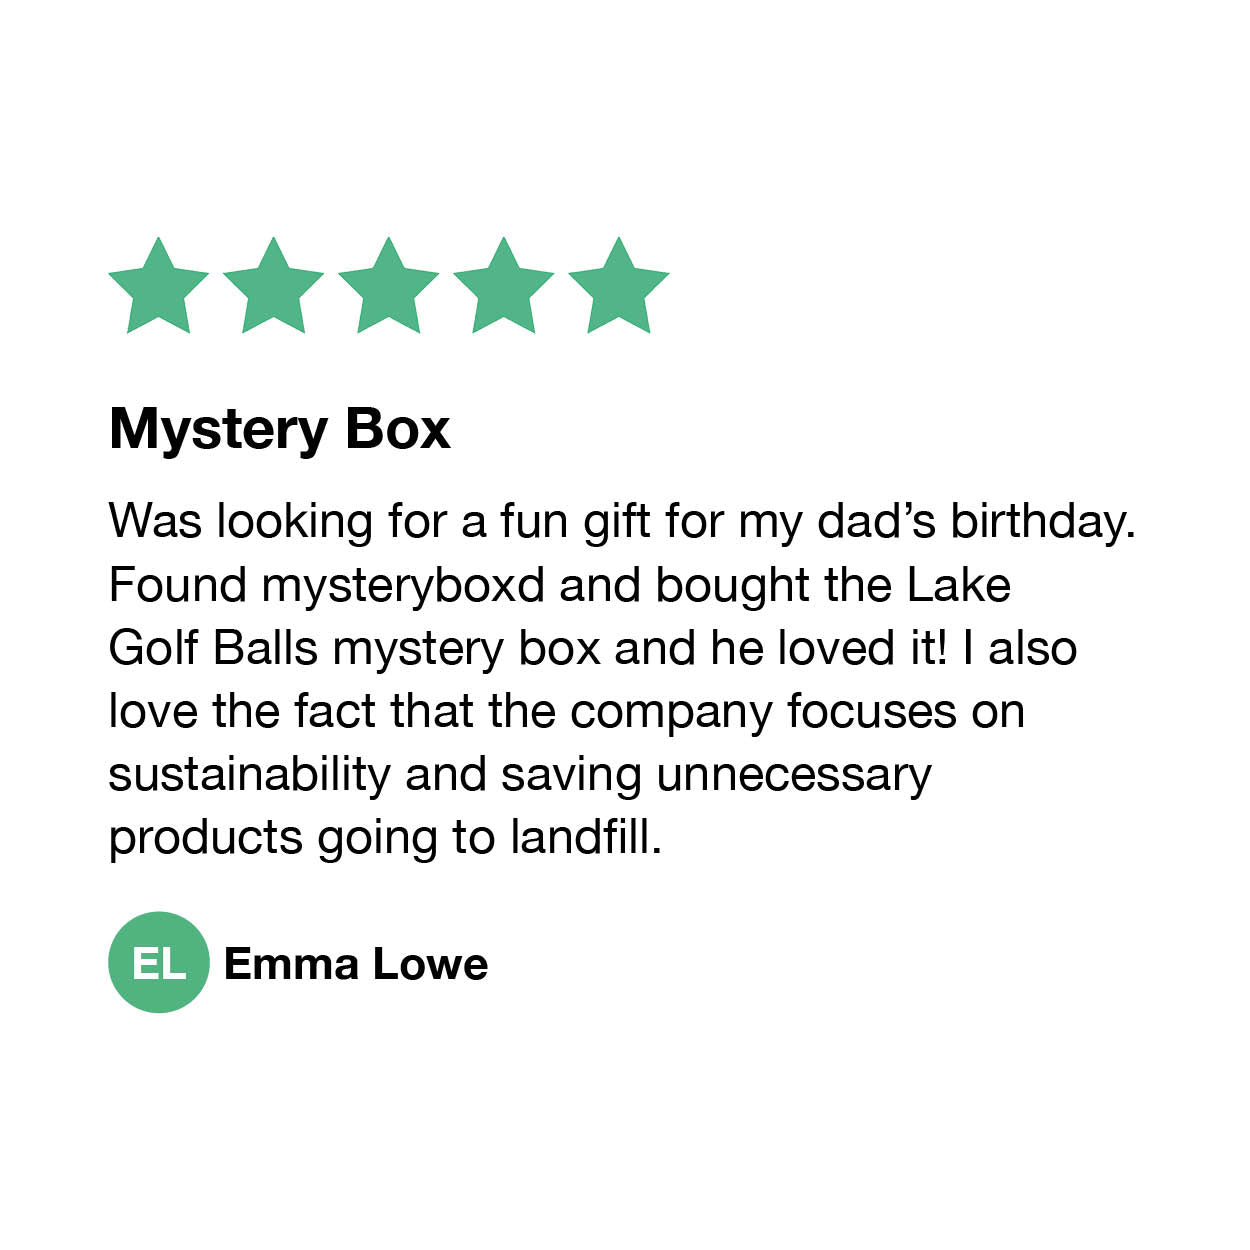 Mystery Box Mystery box, Box, Mystery, mystery box  